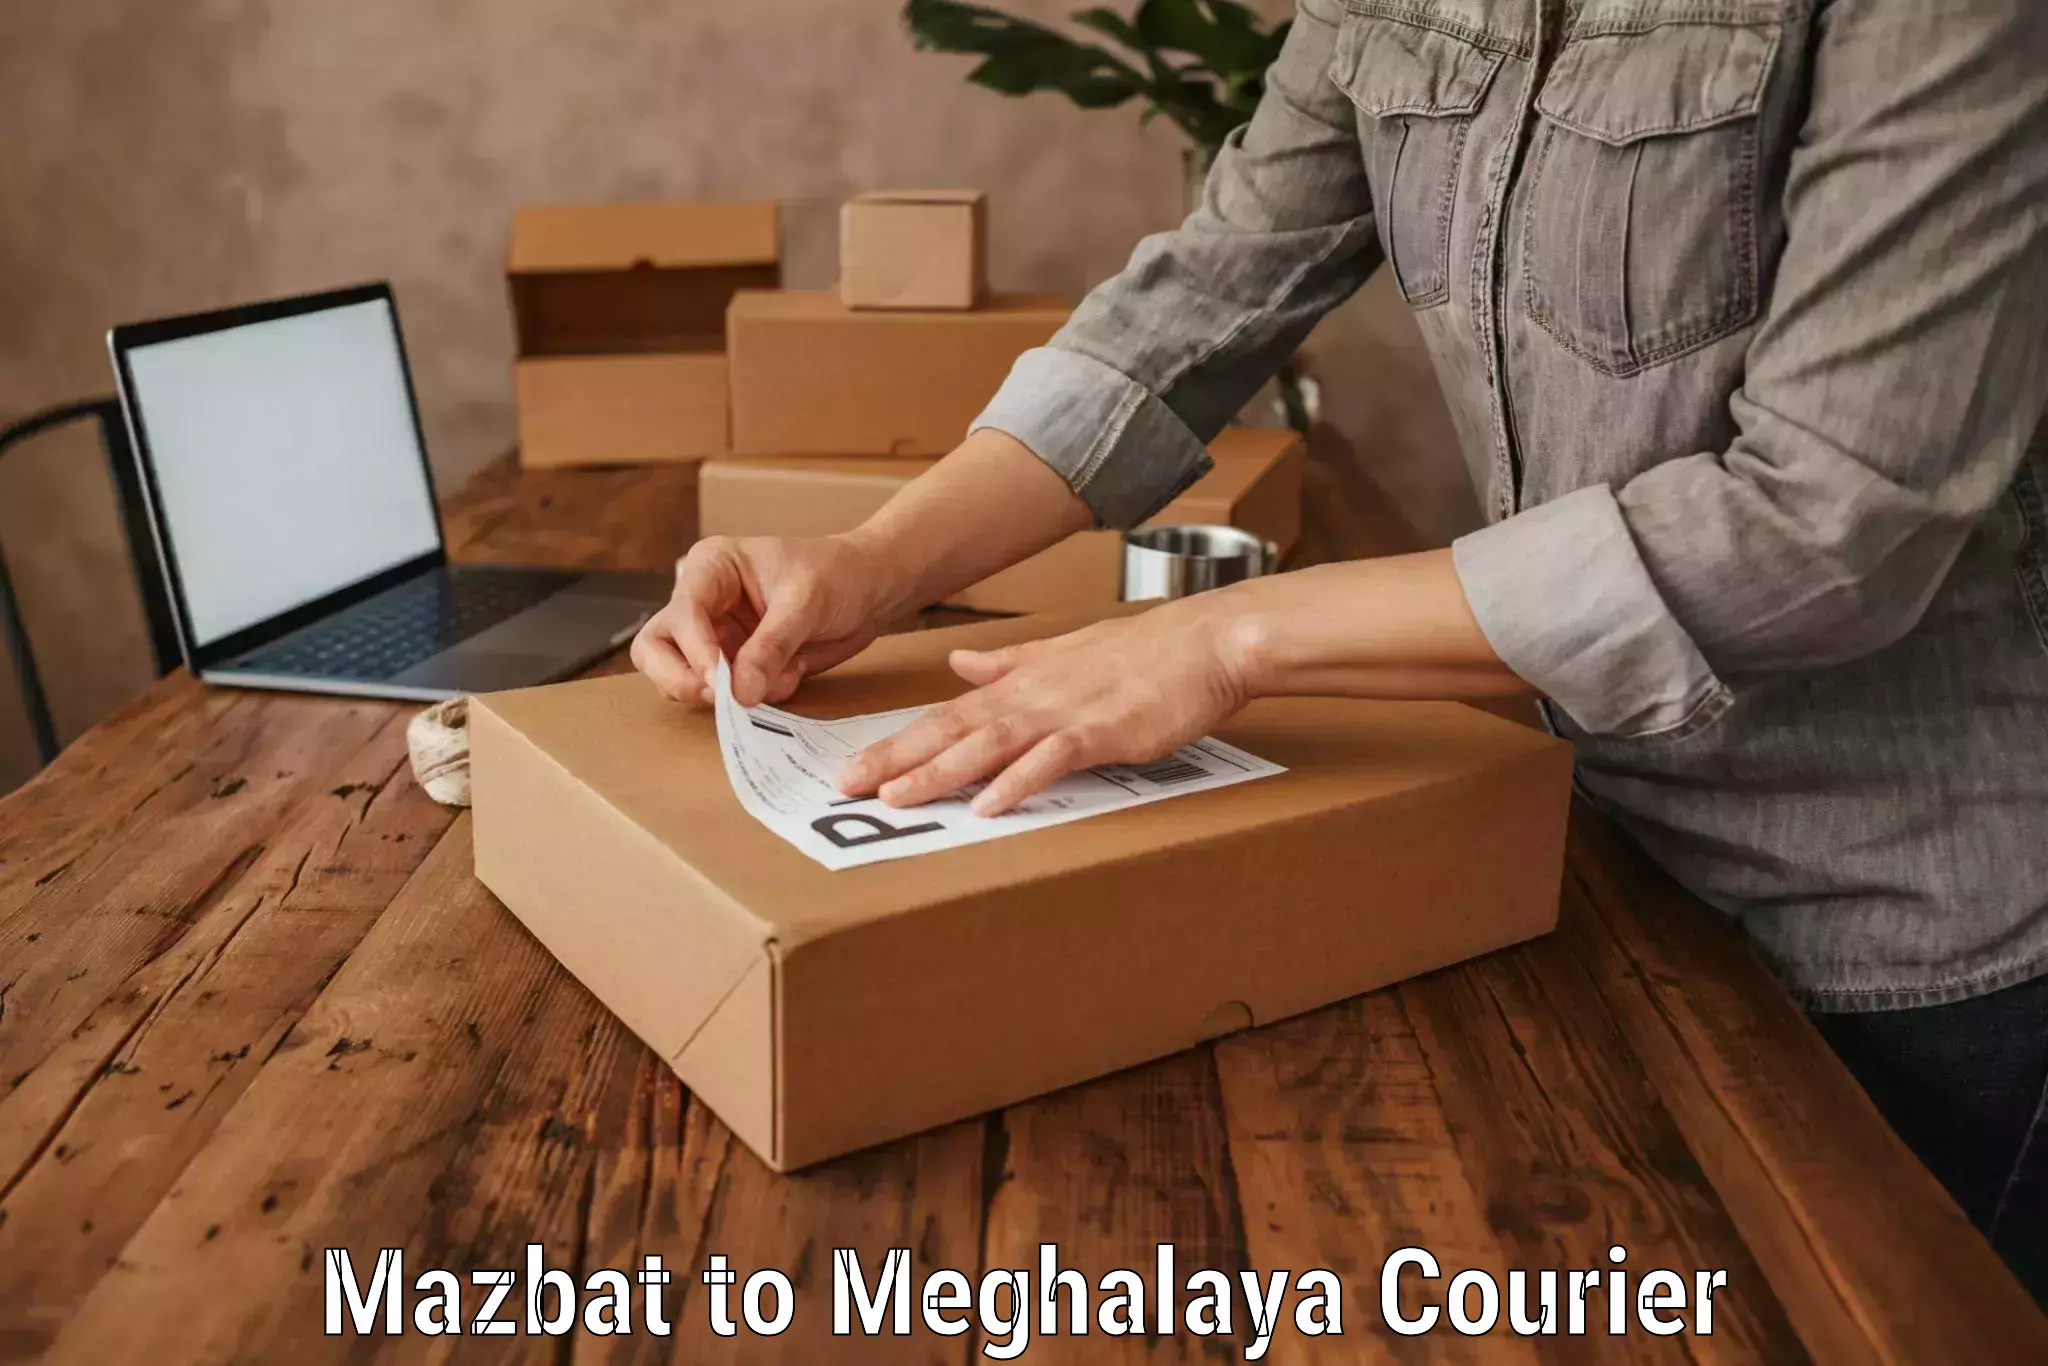 Urgent luggage shipment Mazbat to Meghalaya